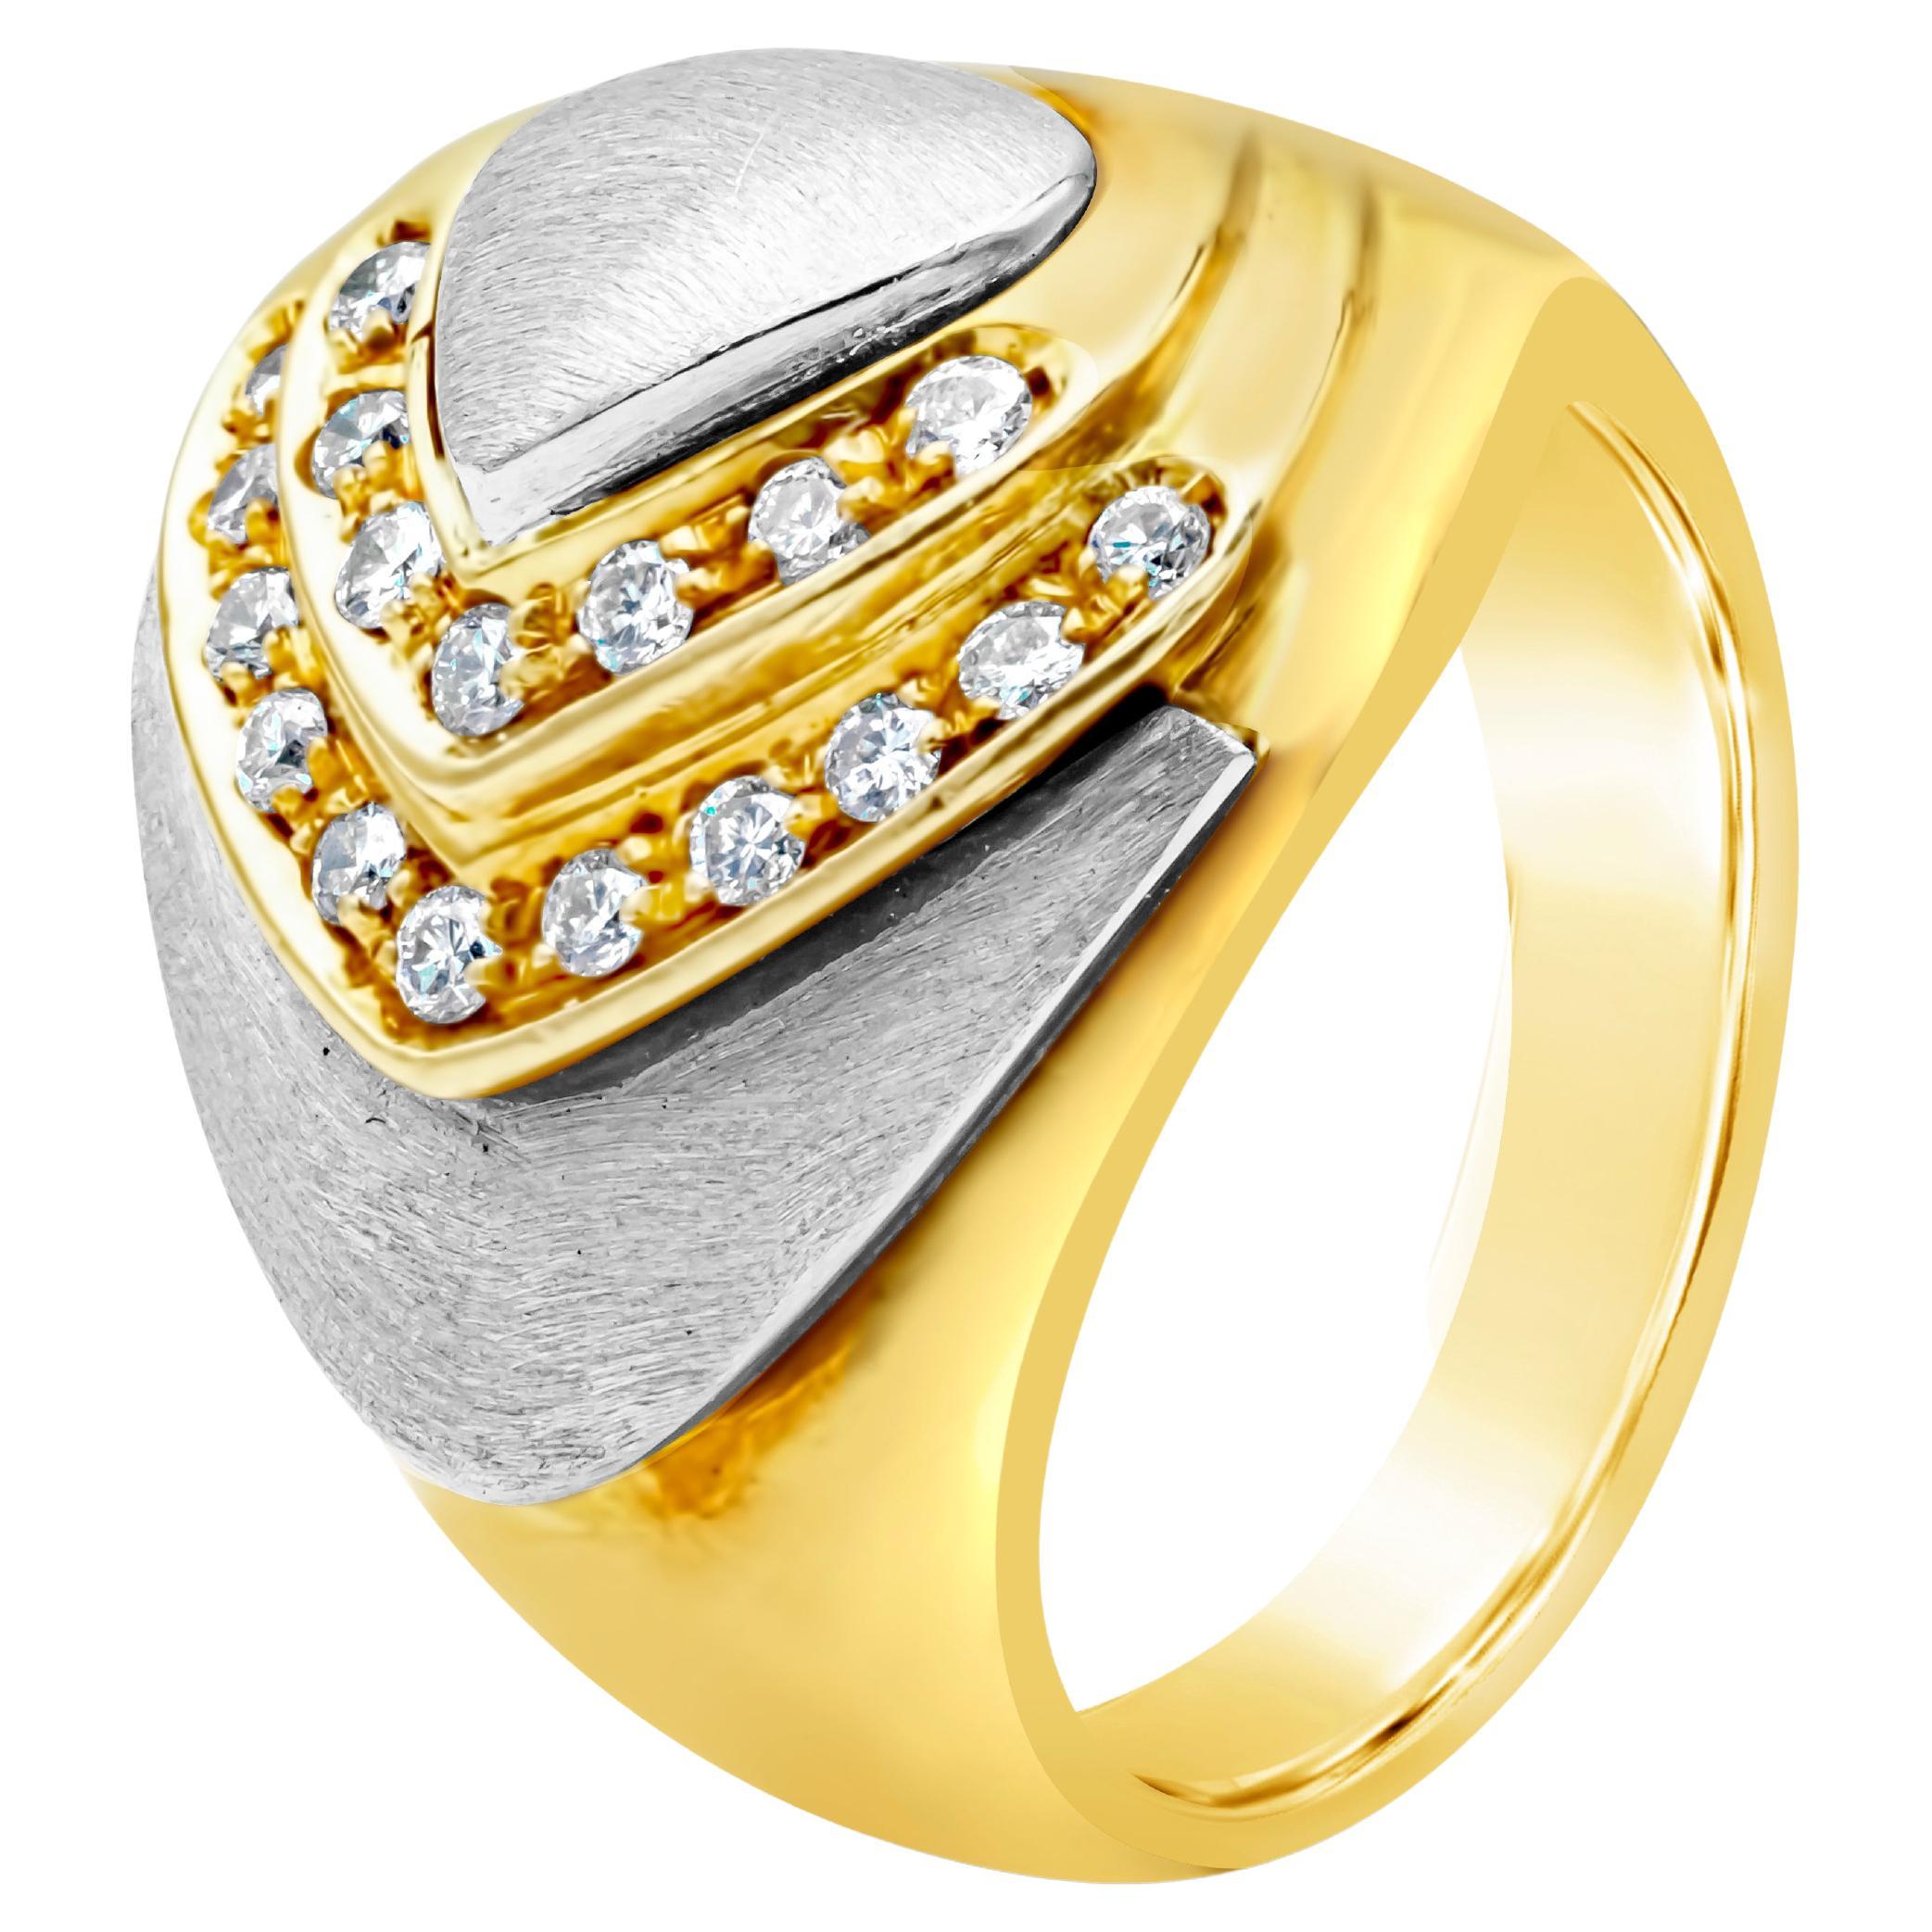 Bague à la mode rétro bicolore 18 carats avec diamants ronds brillants de 0,27 carat au total